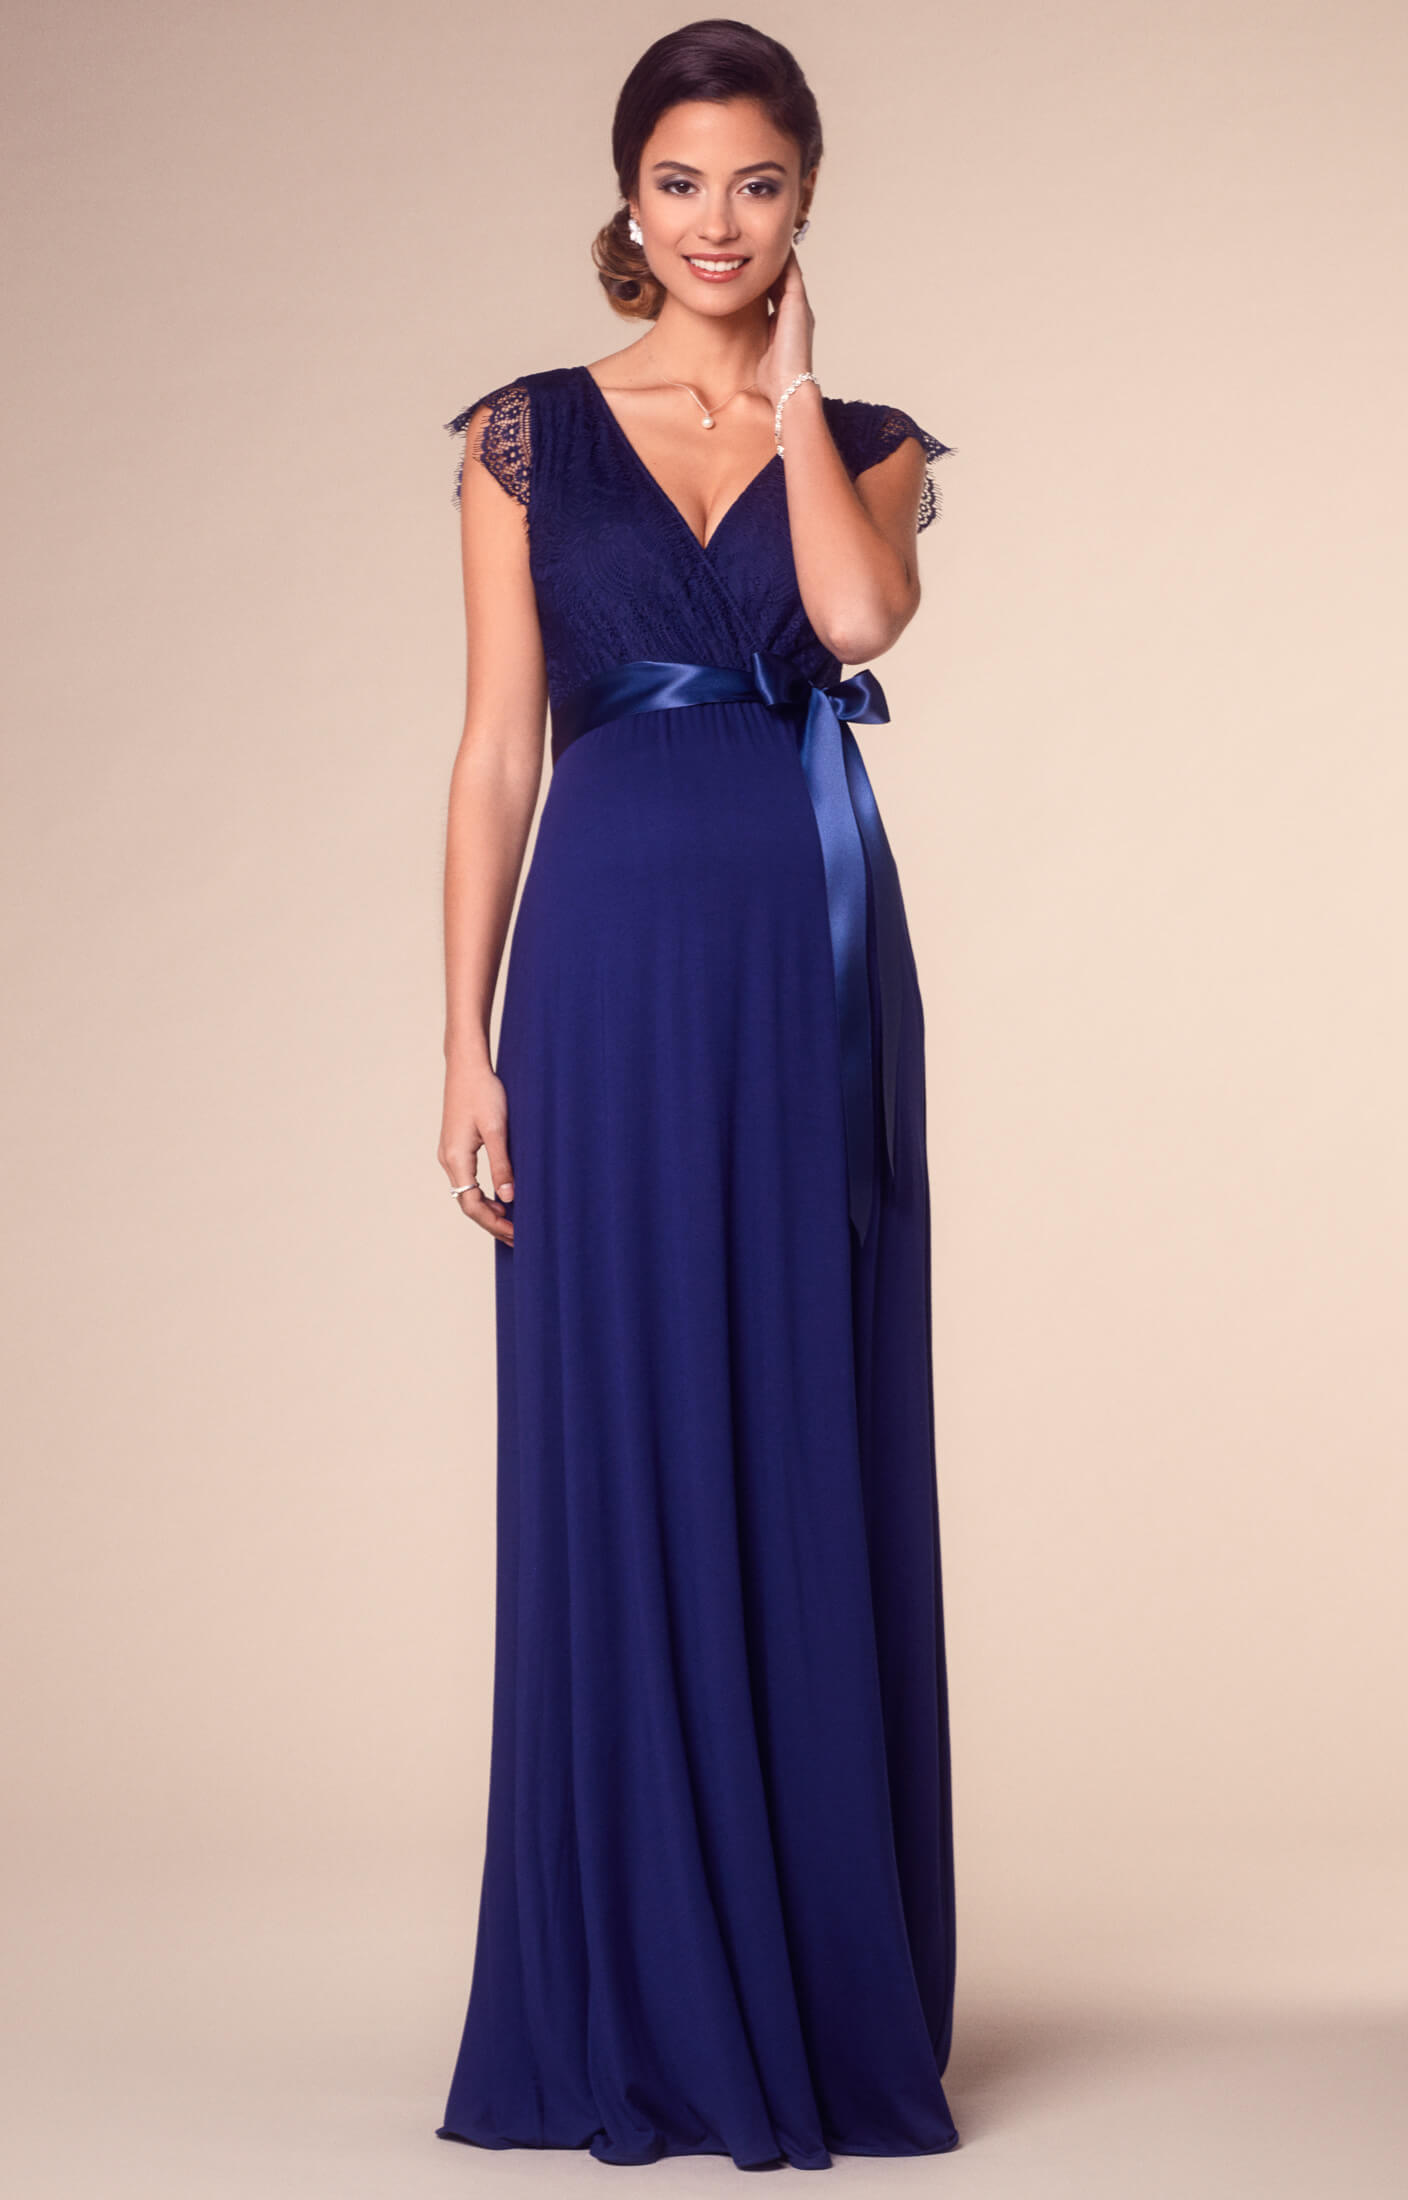 Rose DE lang by Umstandshochzeitskleider, Indigo und Umstandskleid Partykleidung - Abendgarderobe Tiffany in Blau Rosa